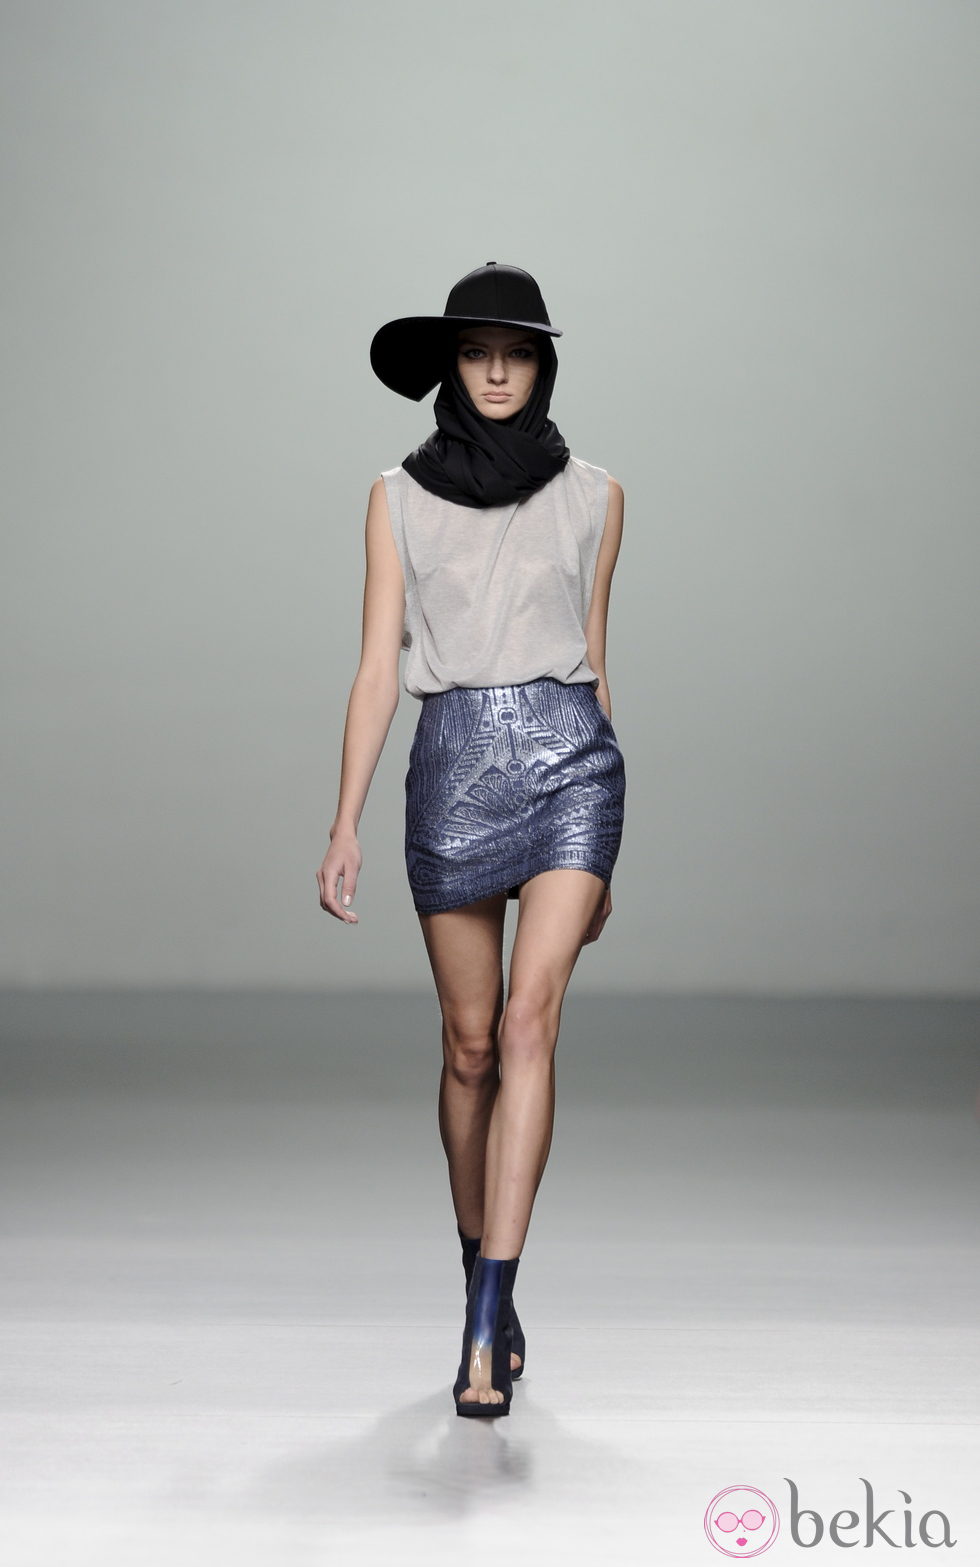 Falda azul metalizada de la colección otoño/invierno 2013/2014 de Rabaneda en Madrid Fashion Week